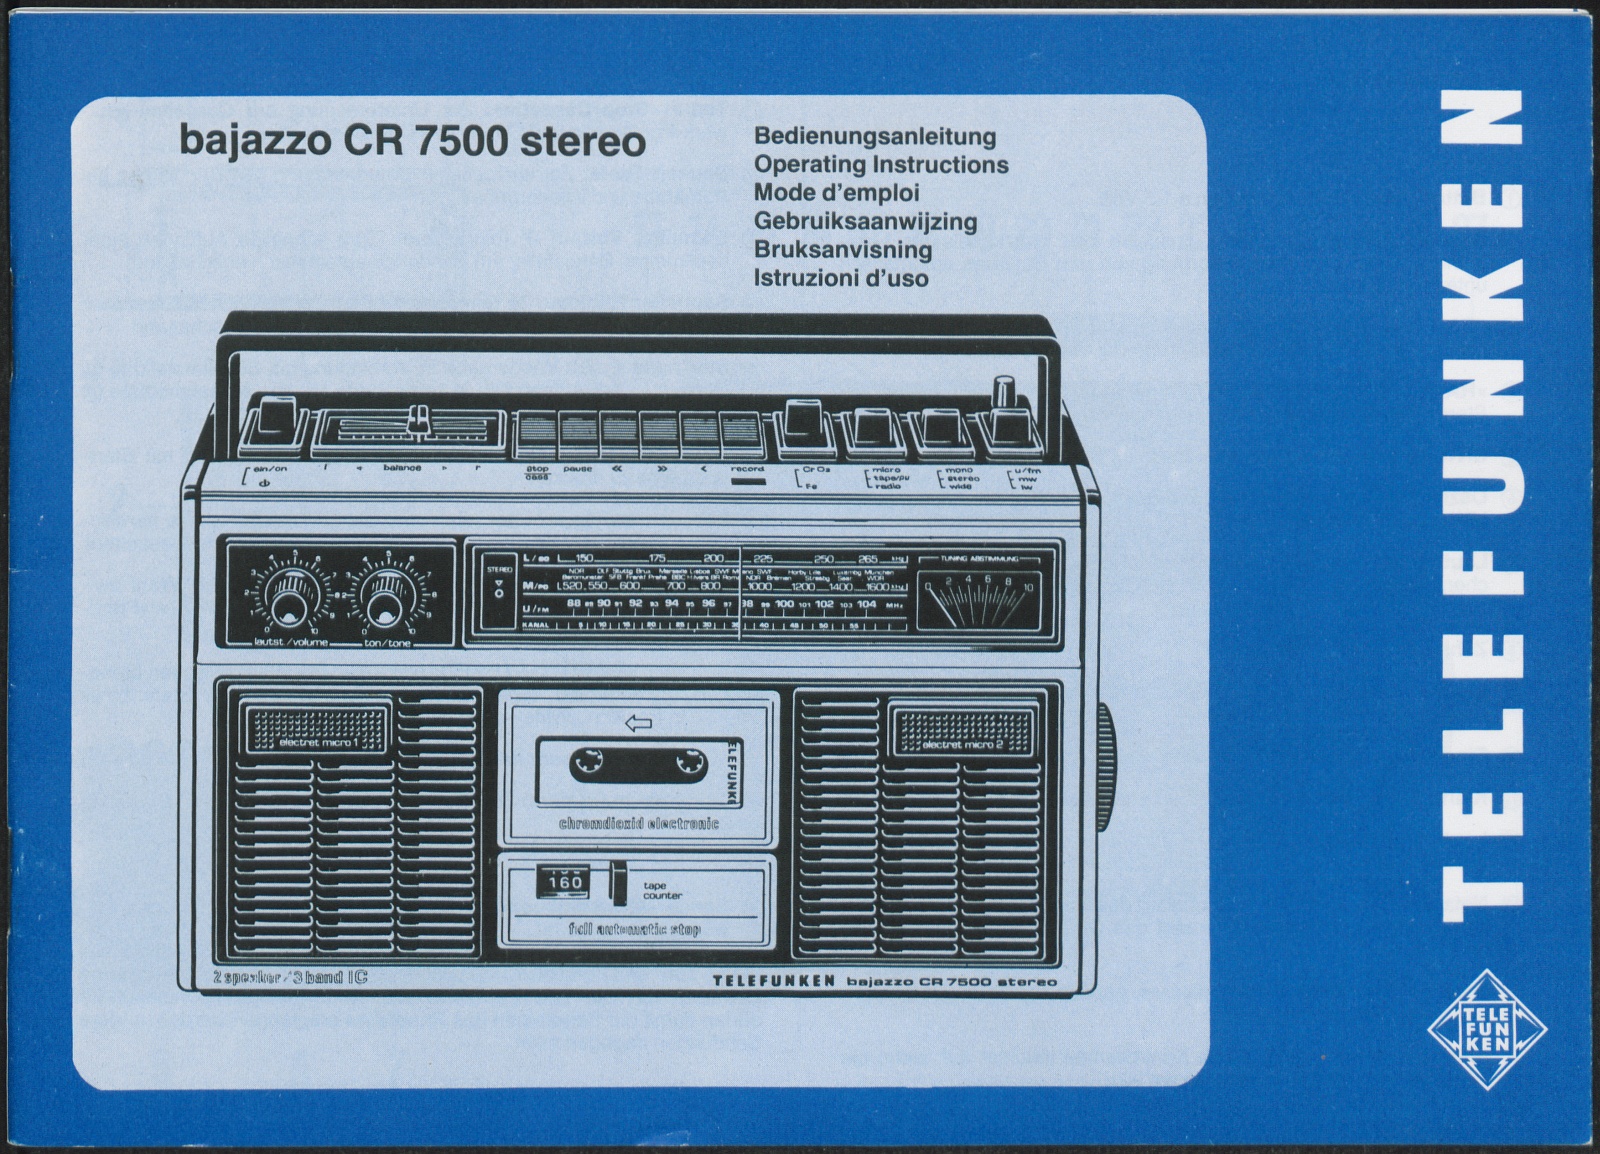 Bedienungsanleitung: bajazzo CR 7500 stereo (Stiftung Deutsches Technikmuseum Berlin CC0)